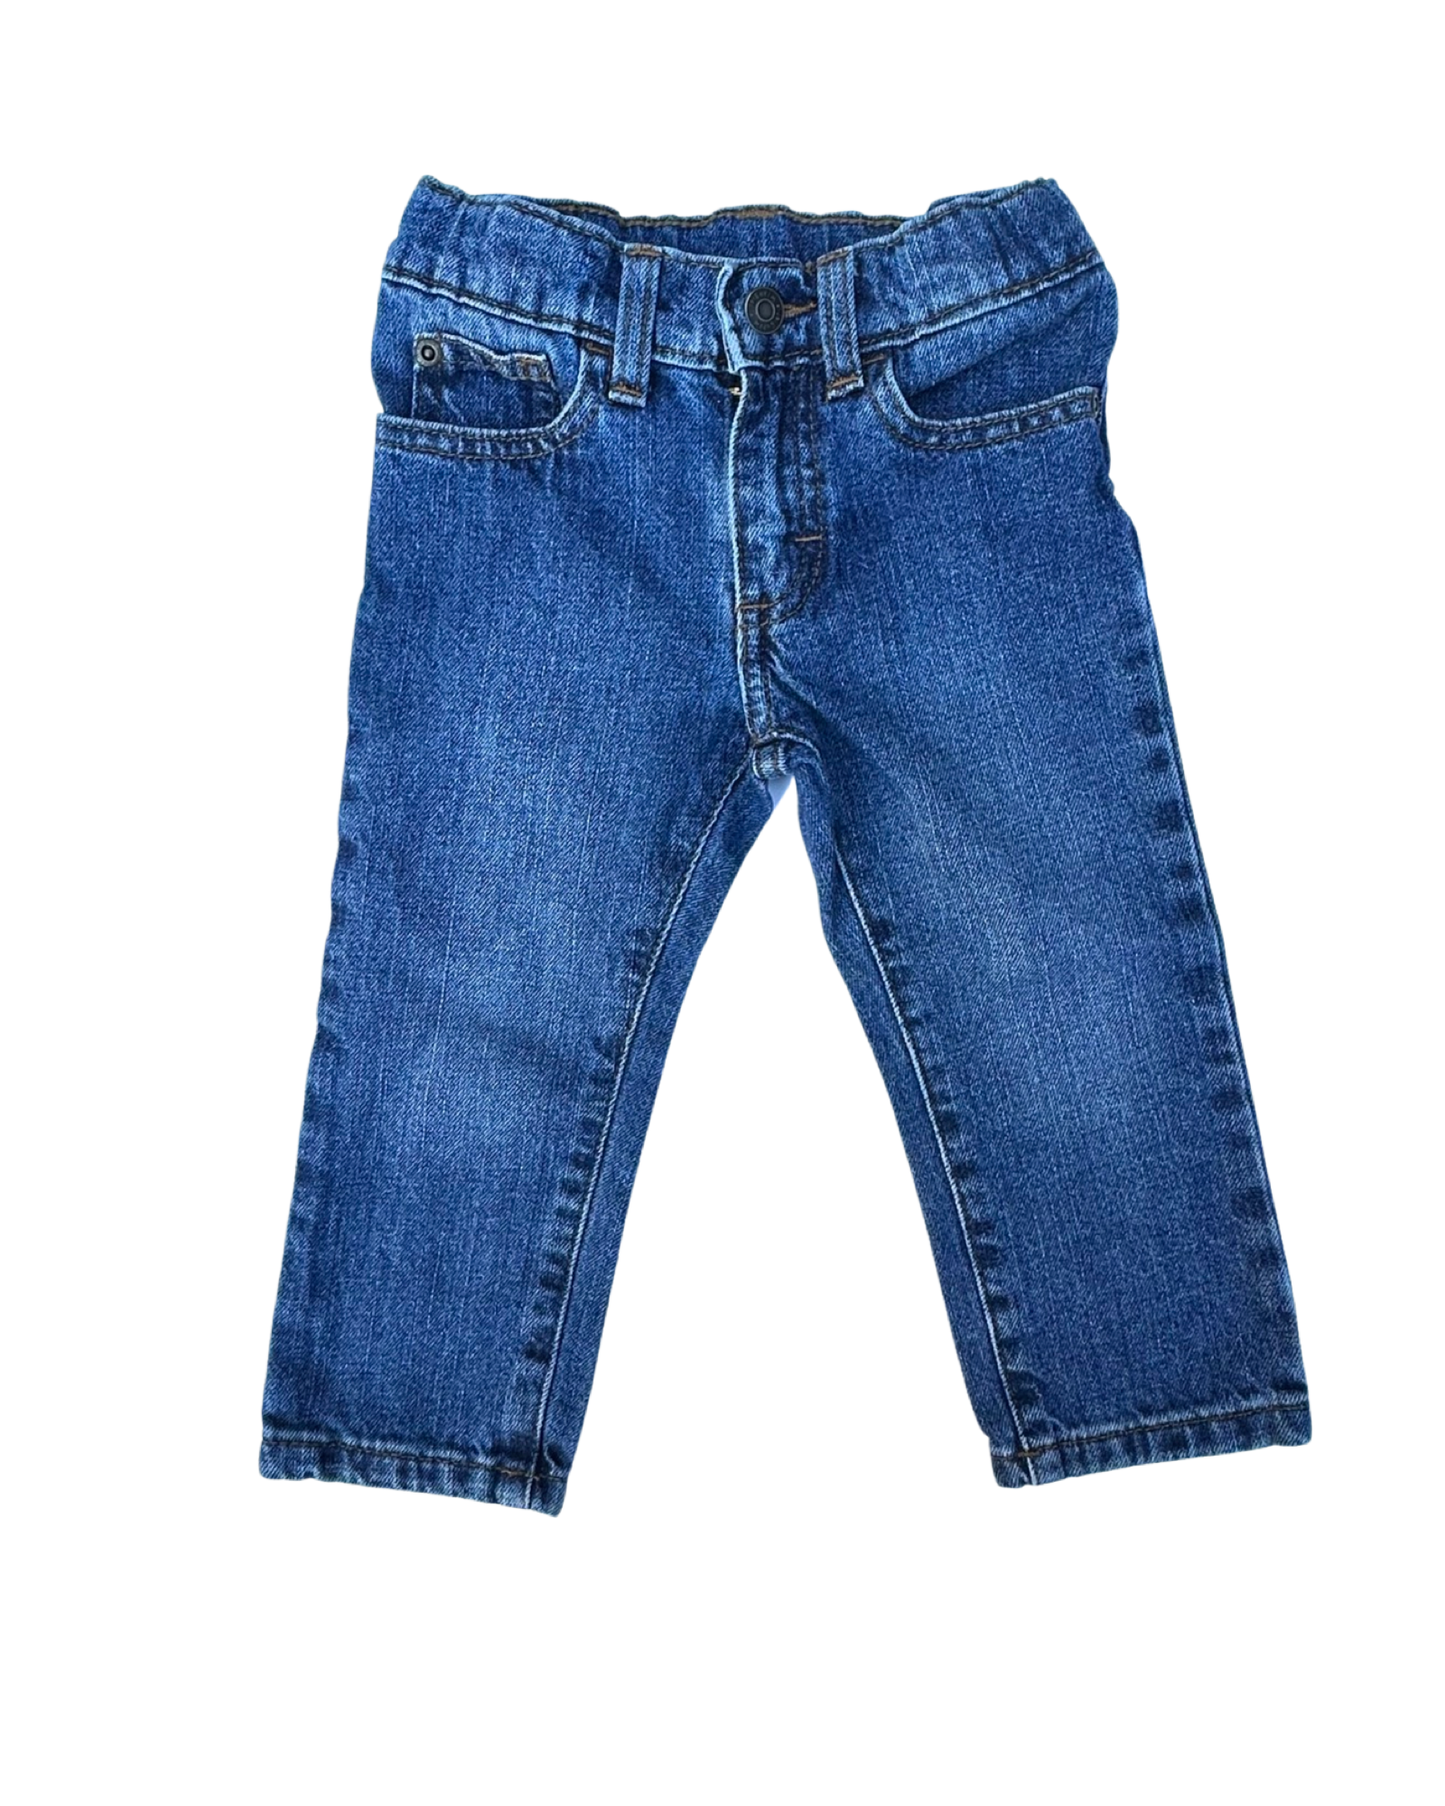 Vintage Wrangler mid wash jeans (1-2yrs)